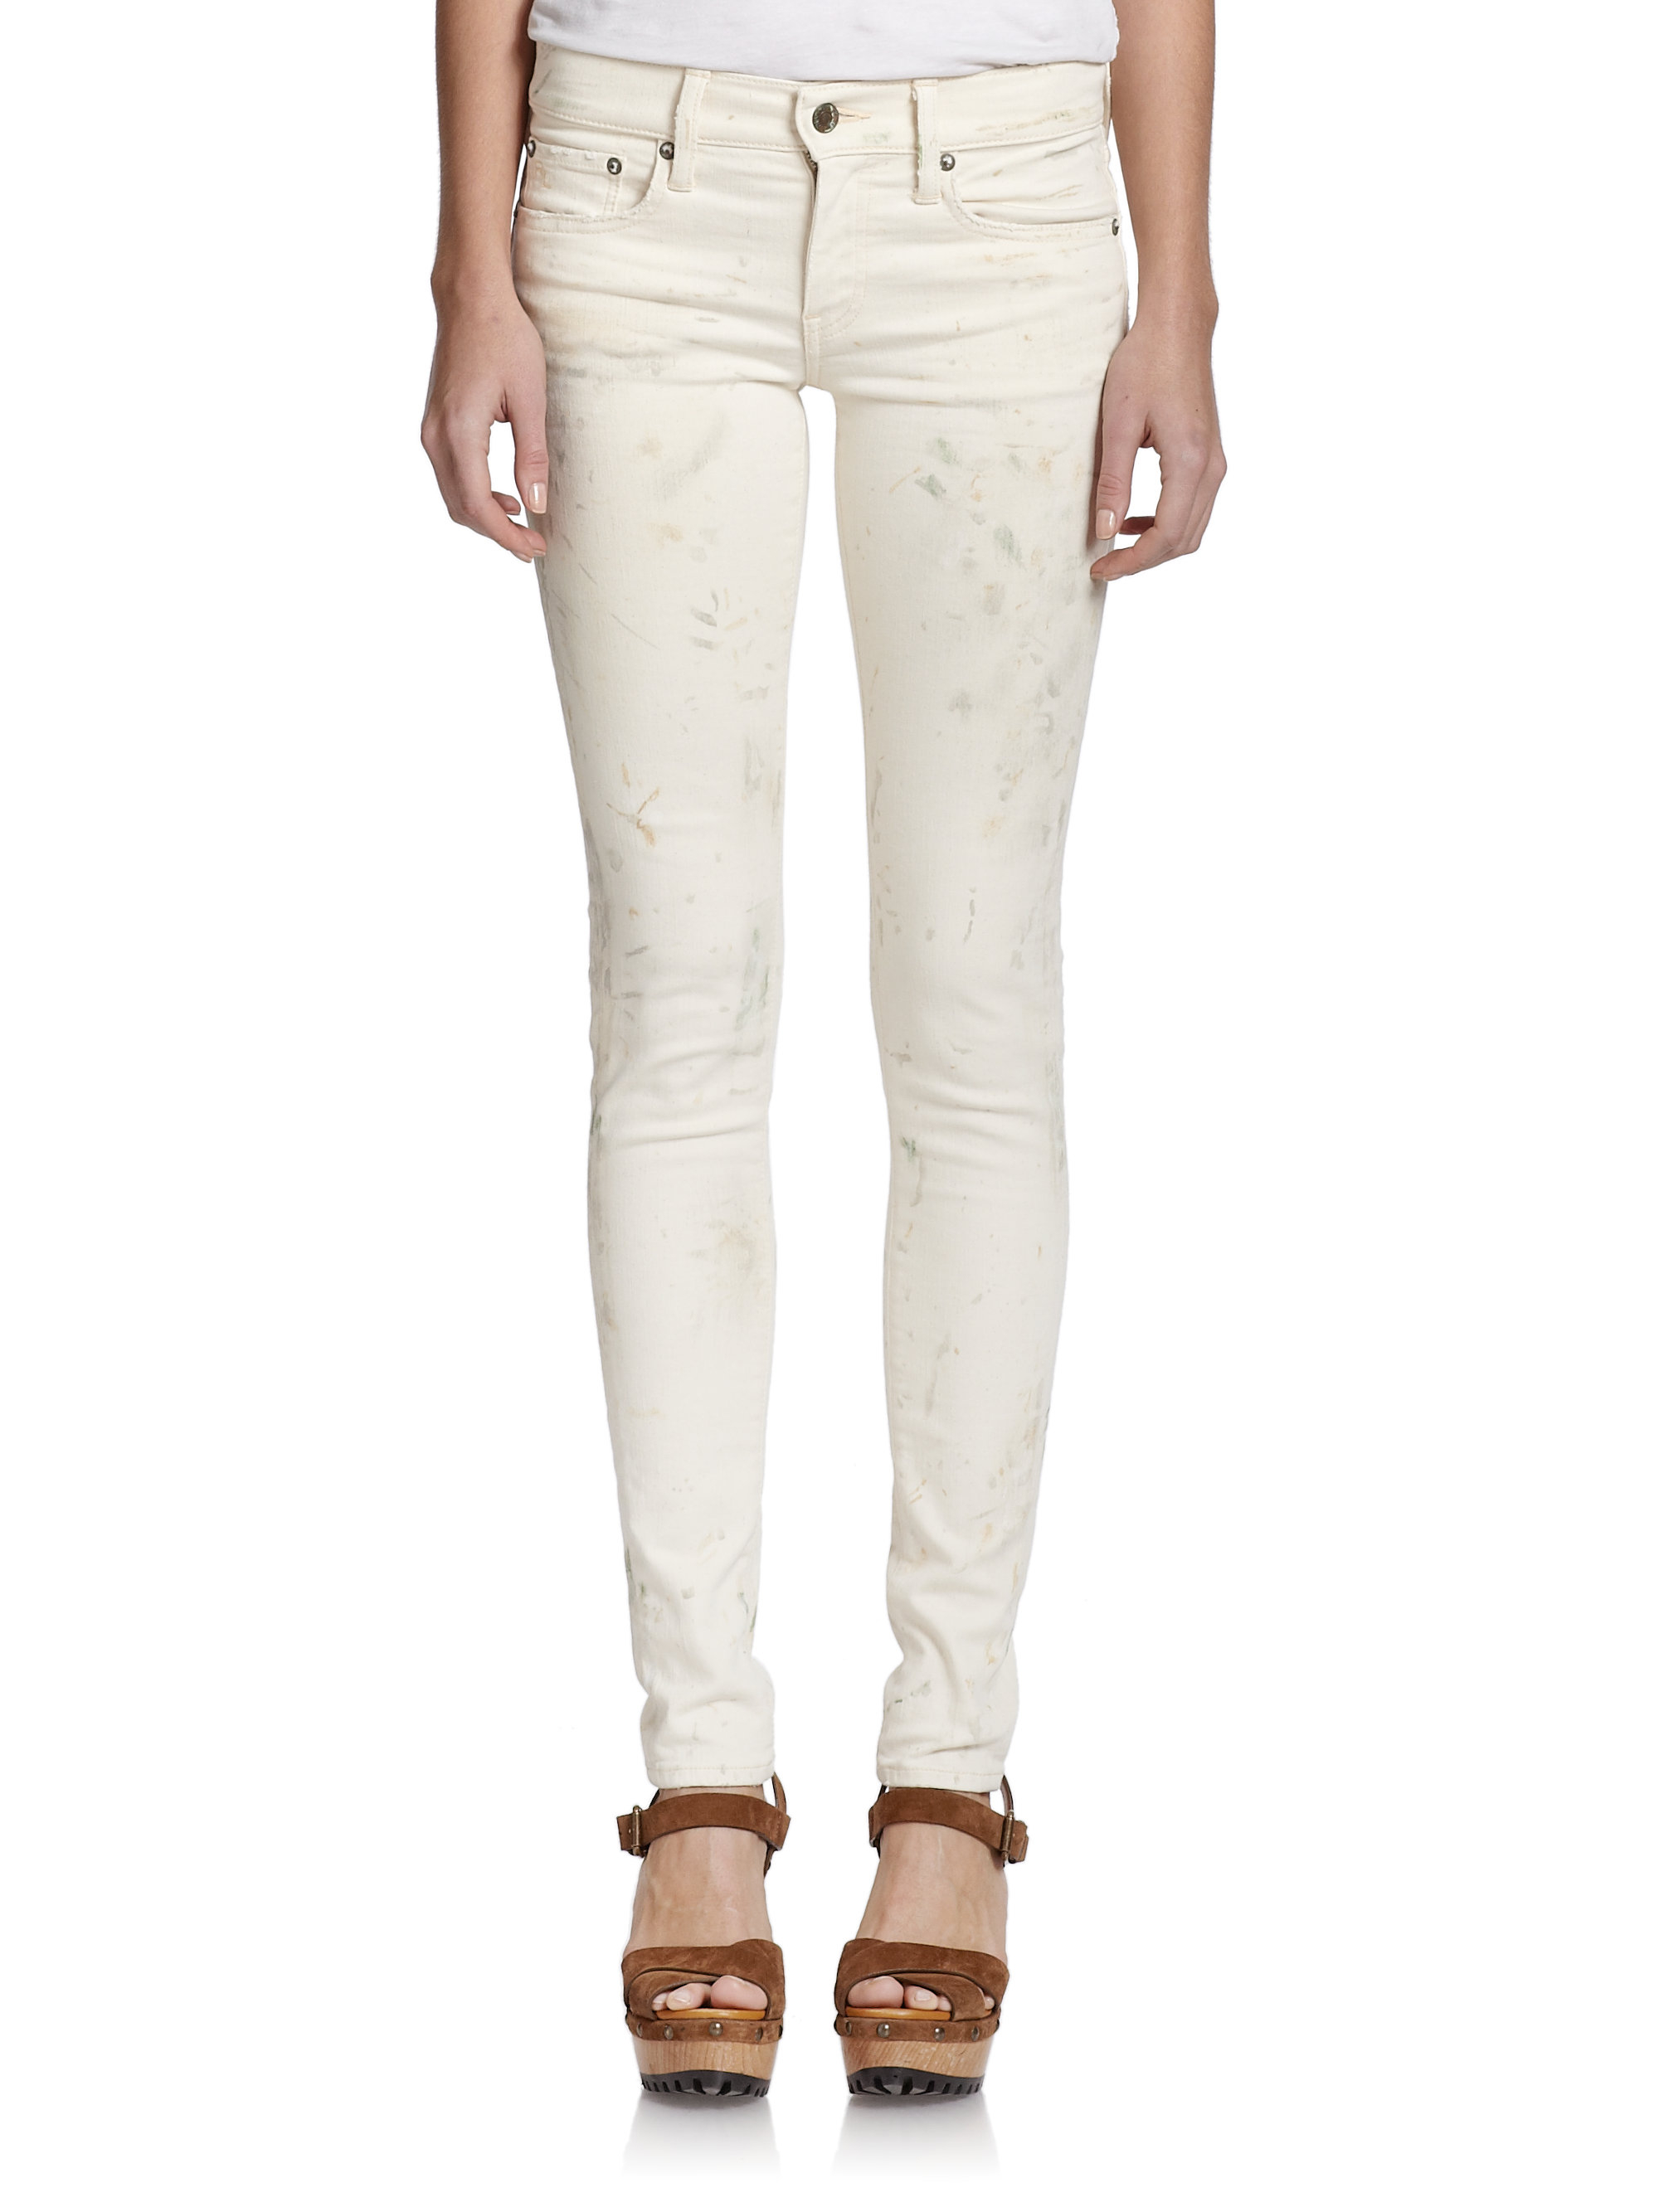 Lyst - Polo Ralph Lauren Paint-splattered Skinny Jeans in White